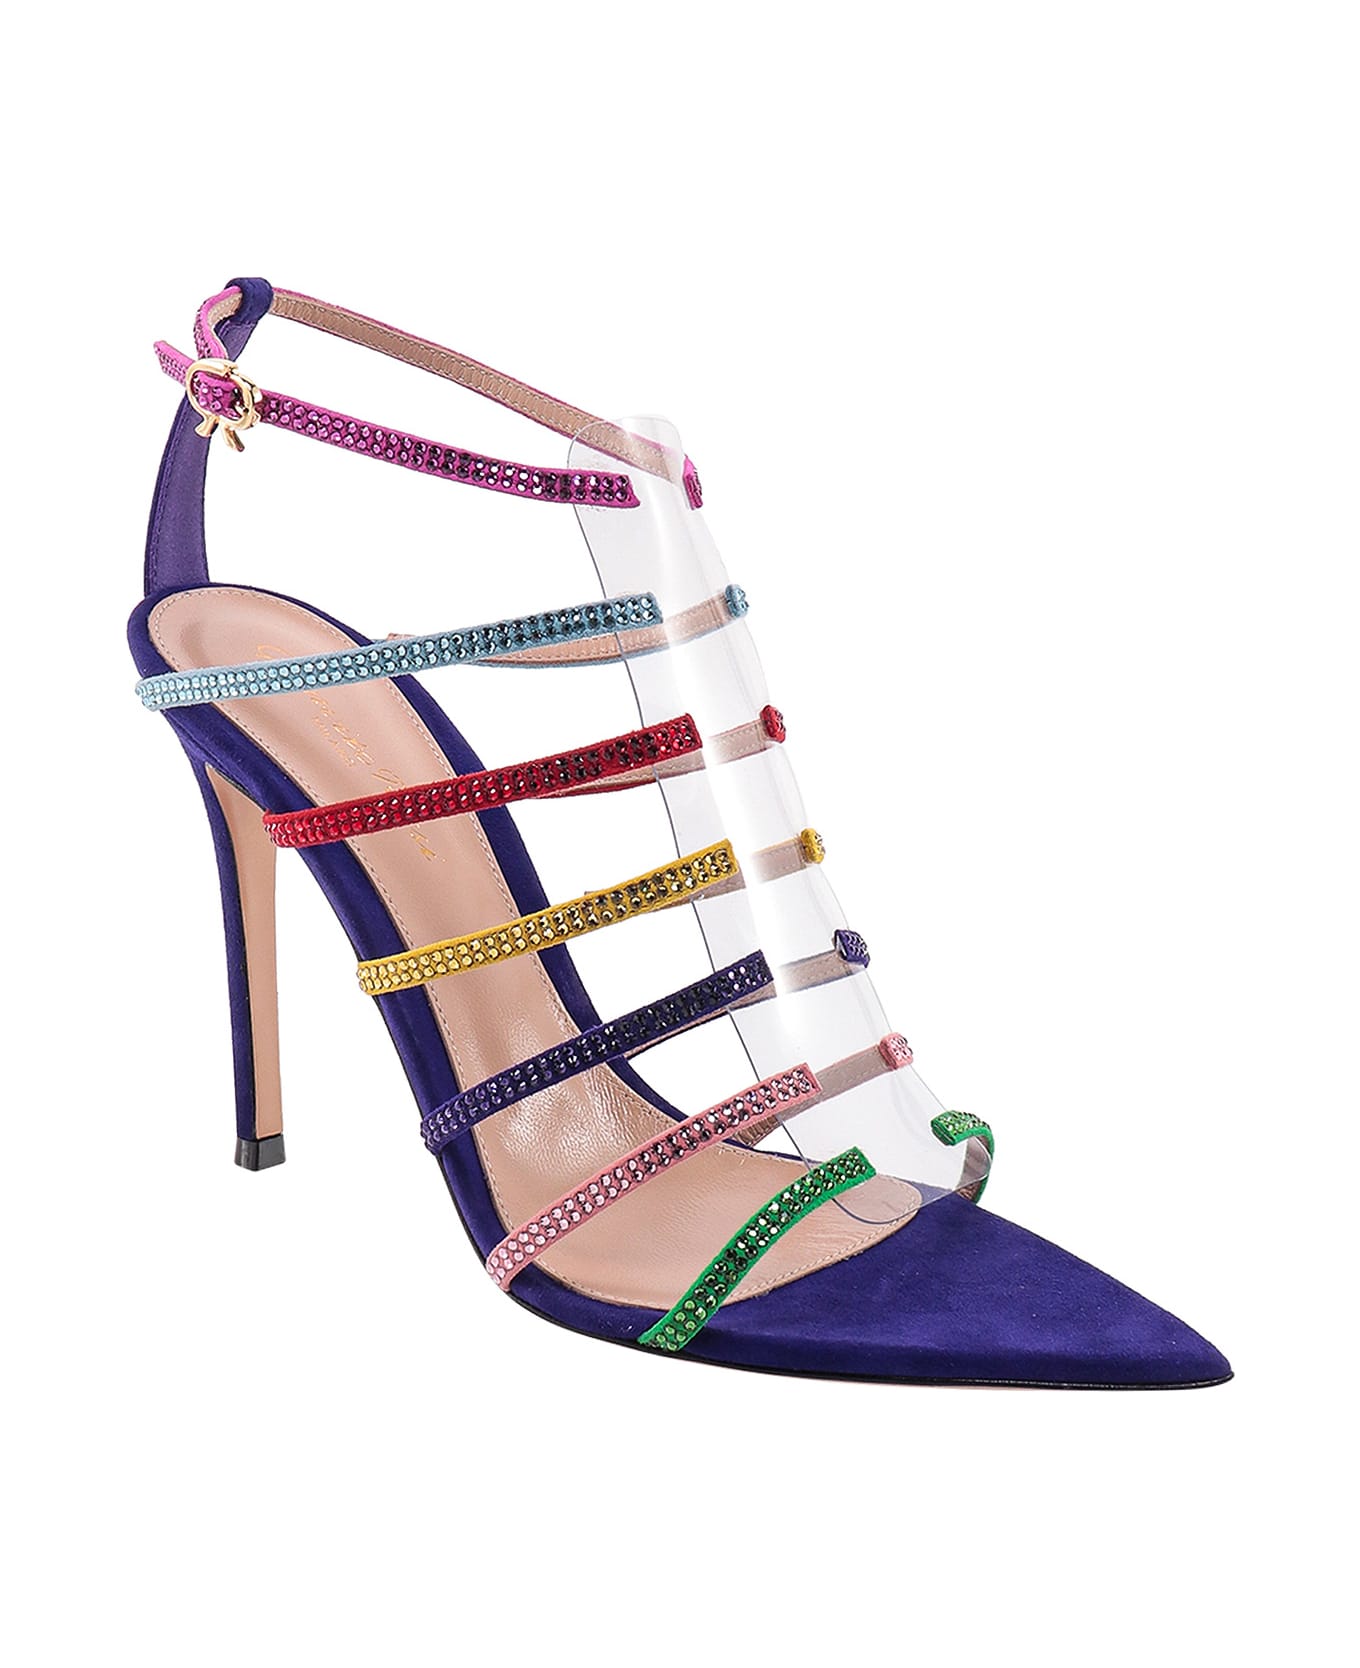 Gianvito Rossi Mirage Sandals - Multicolor サンダル